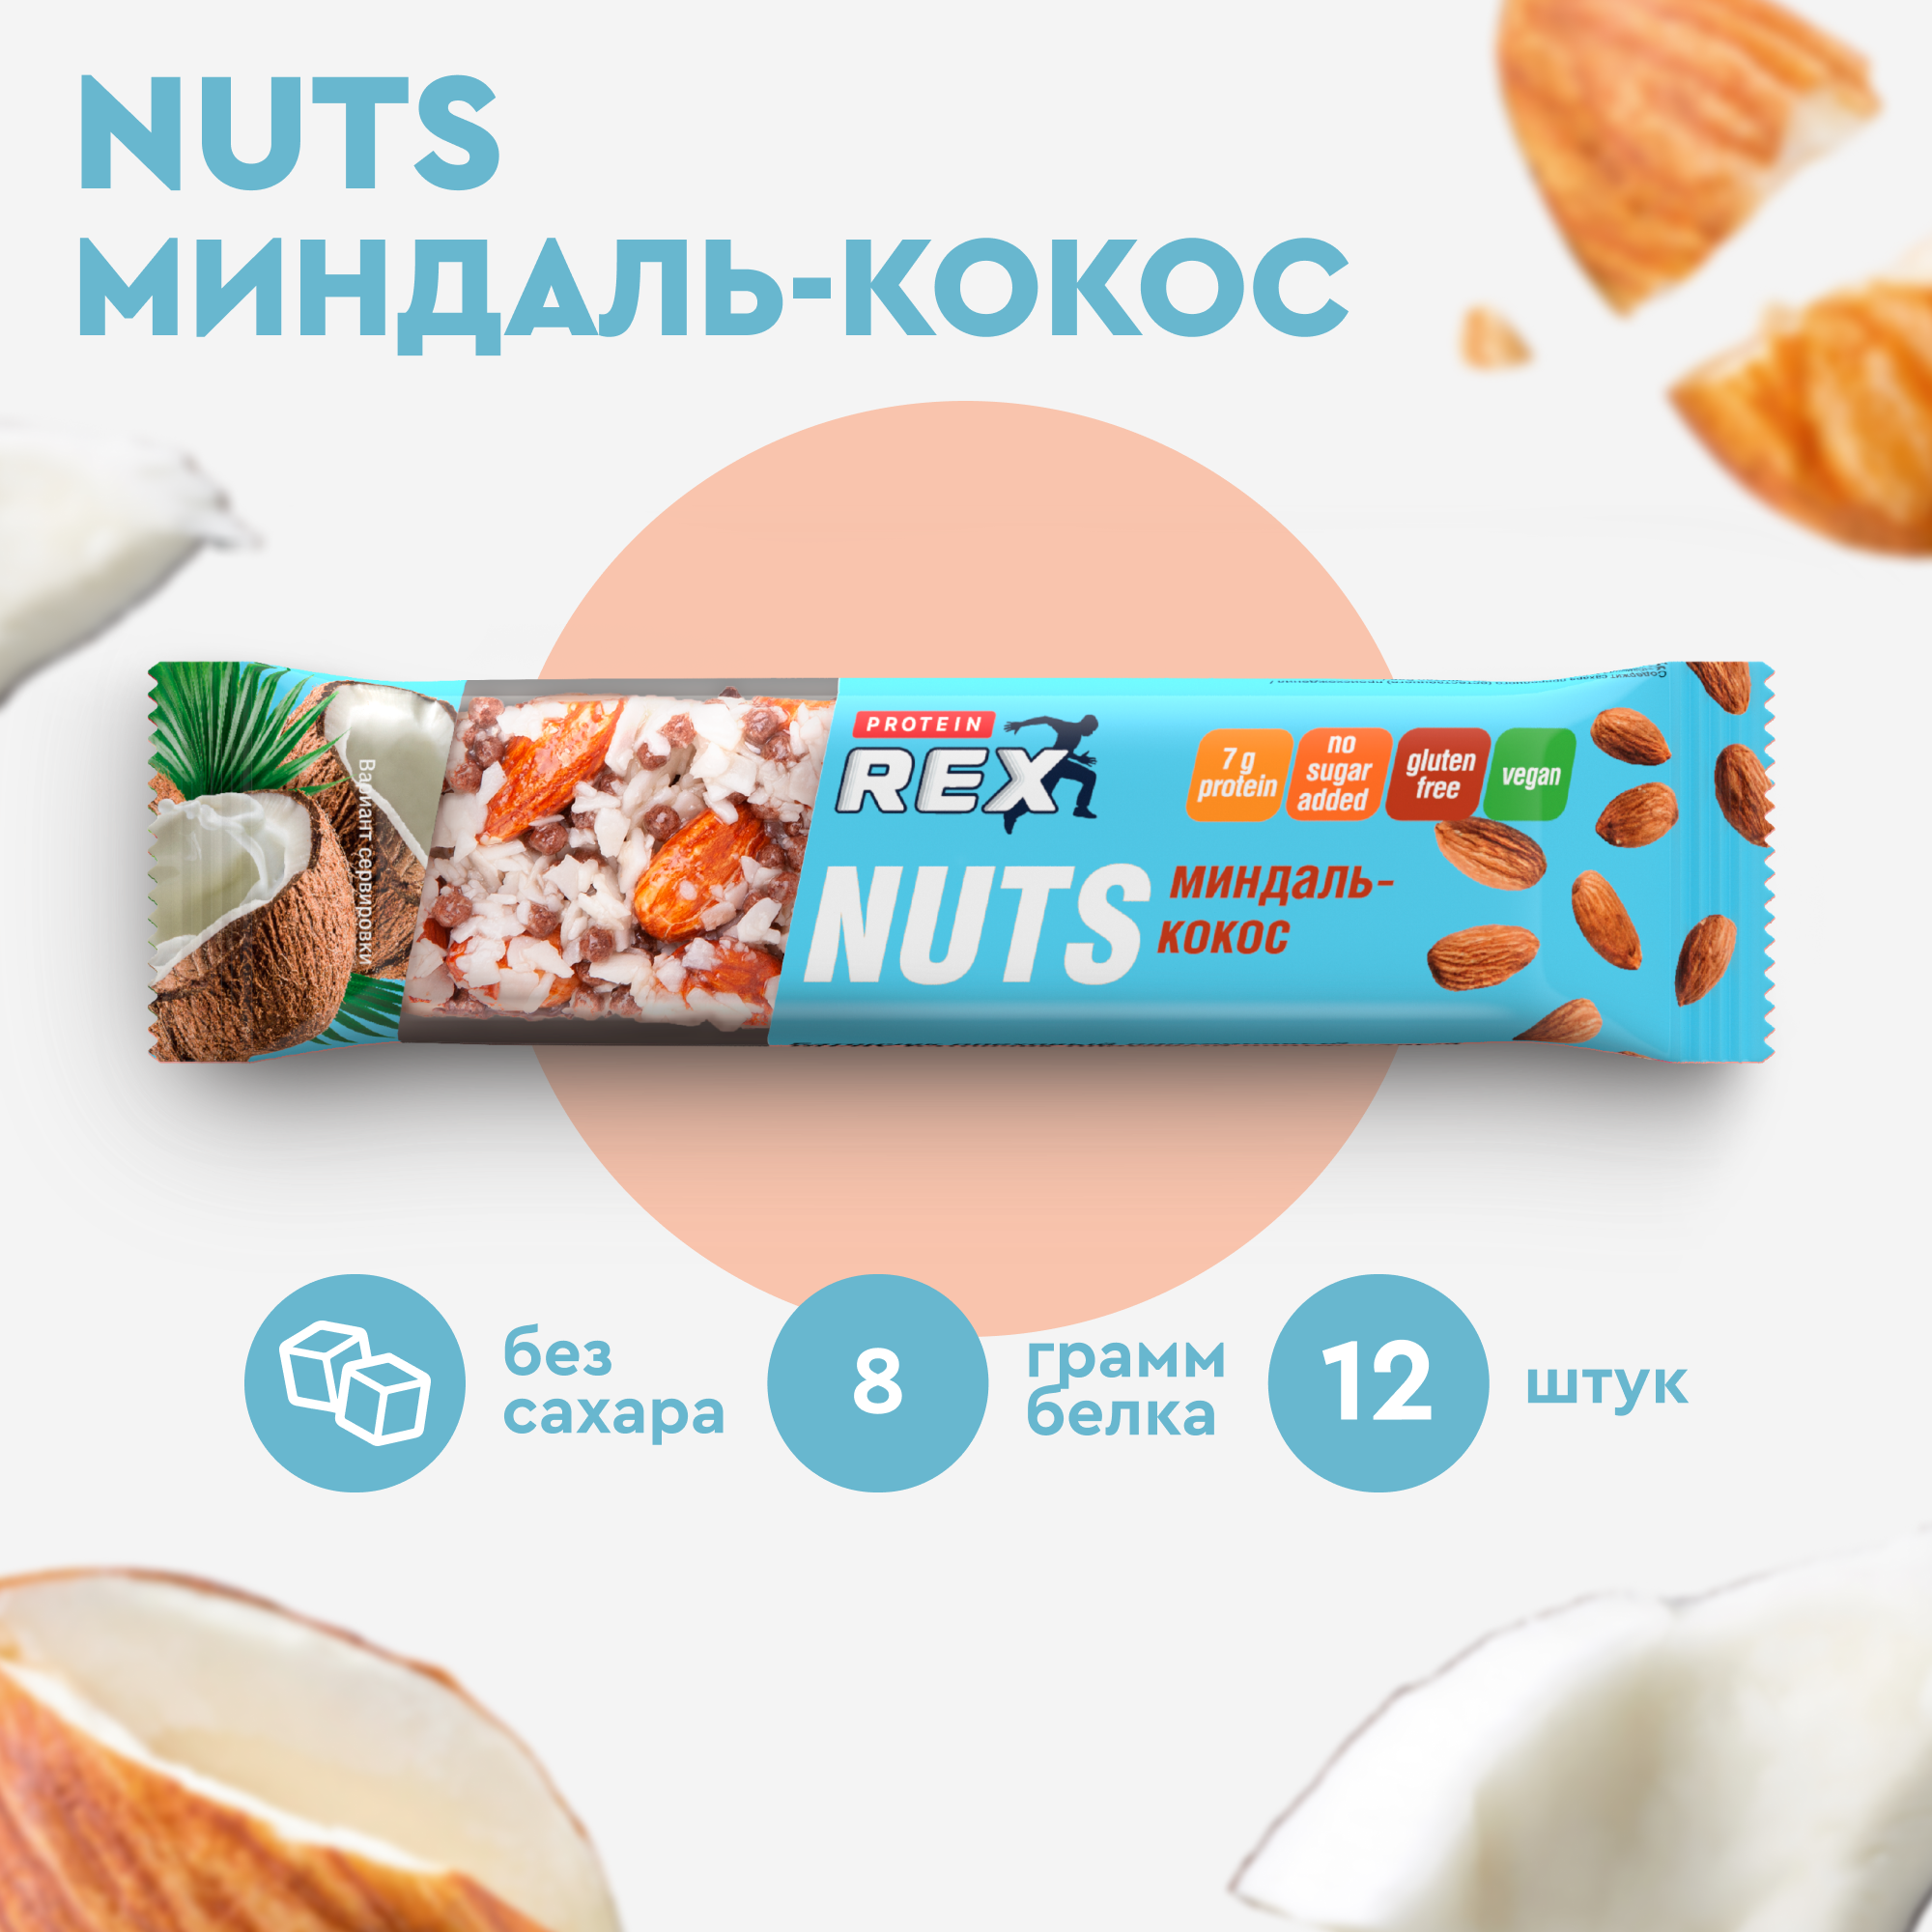 Протеиновые батончики ореховый ProteinRex NUTS Миндаль-кокос, 12 шт х 40 г, 170 ккал спортивное питание, ПП еда, спортивные батончики без сахара